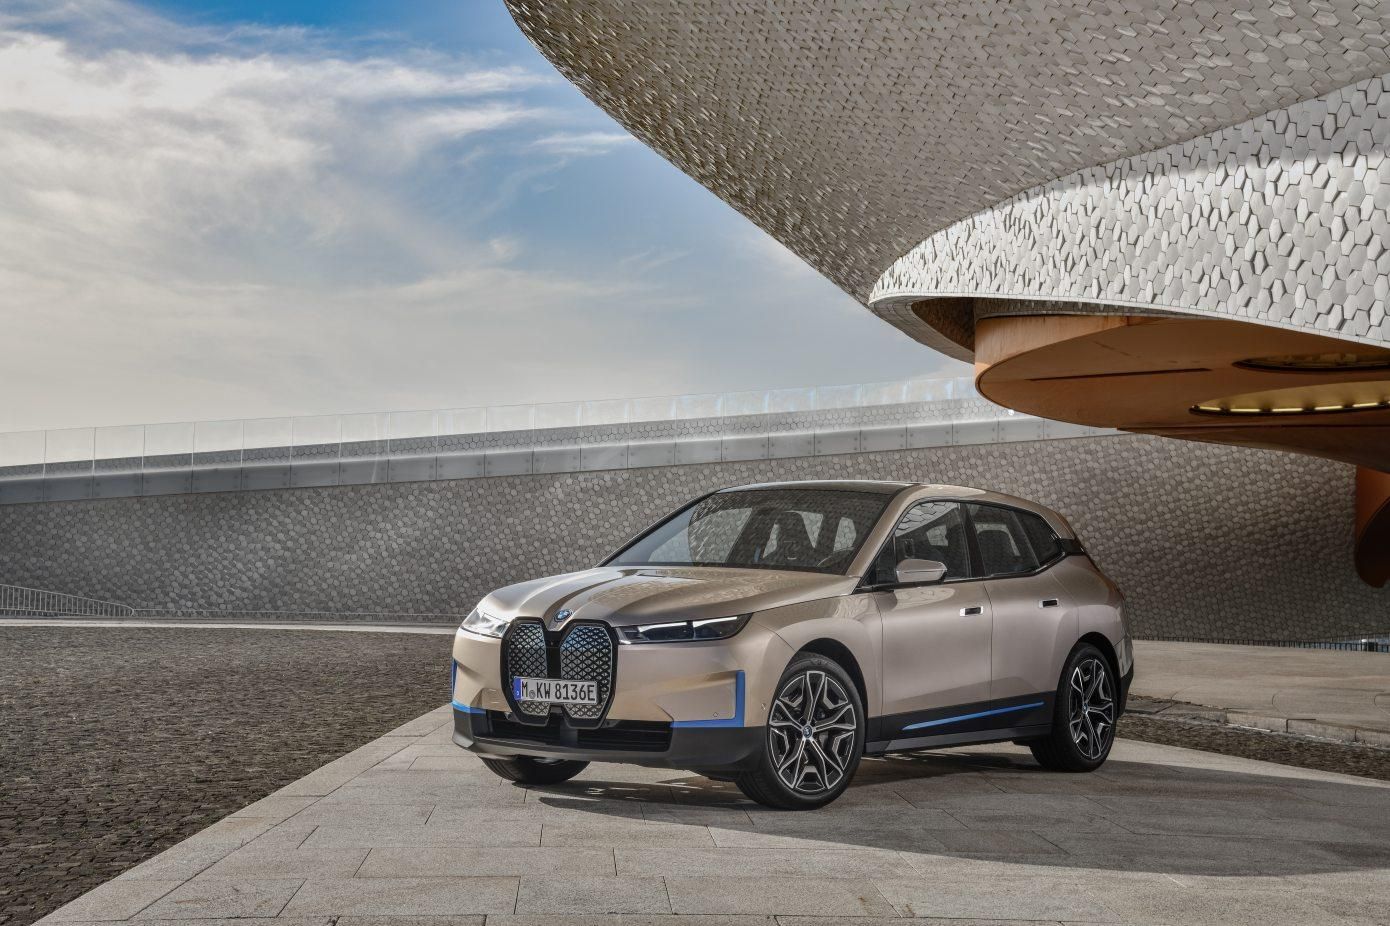 BMW представила електрокроссовер iX: характеристики и цена